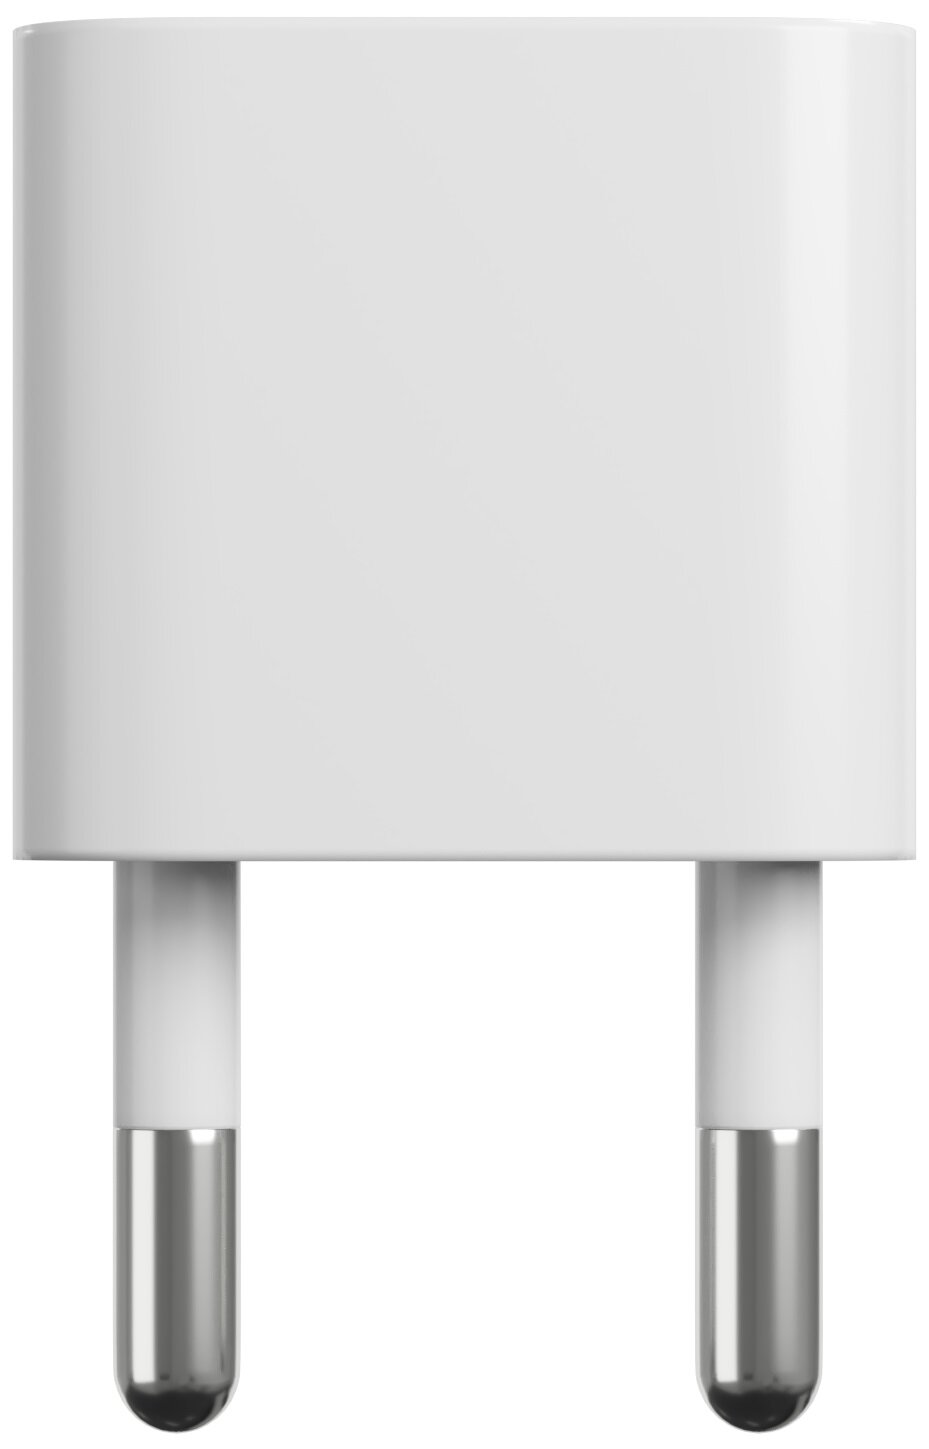 Адаптер сетевой на евровилку, евро розетку GSMIN Travel Adapter A34 переходник для американской, китайской вилки US/CN (250 В, 10А) (Белый)